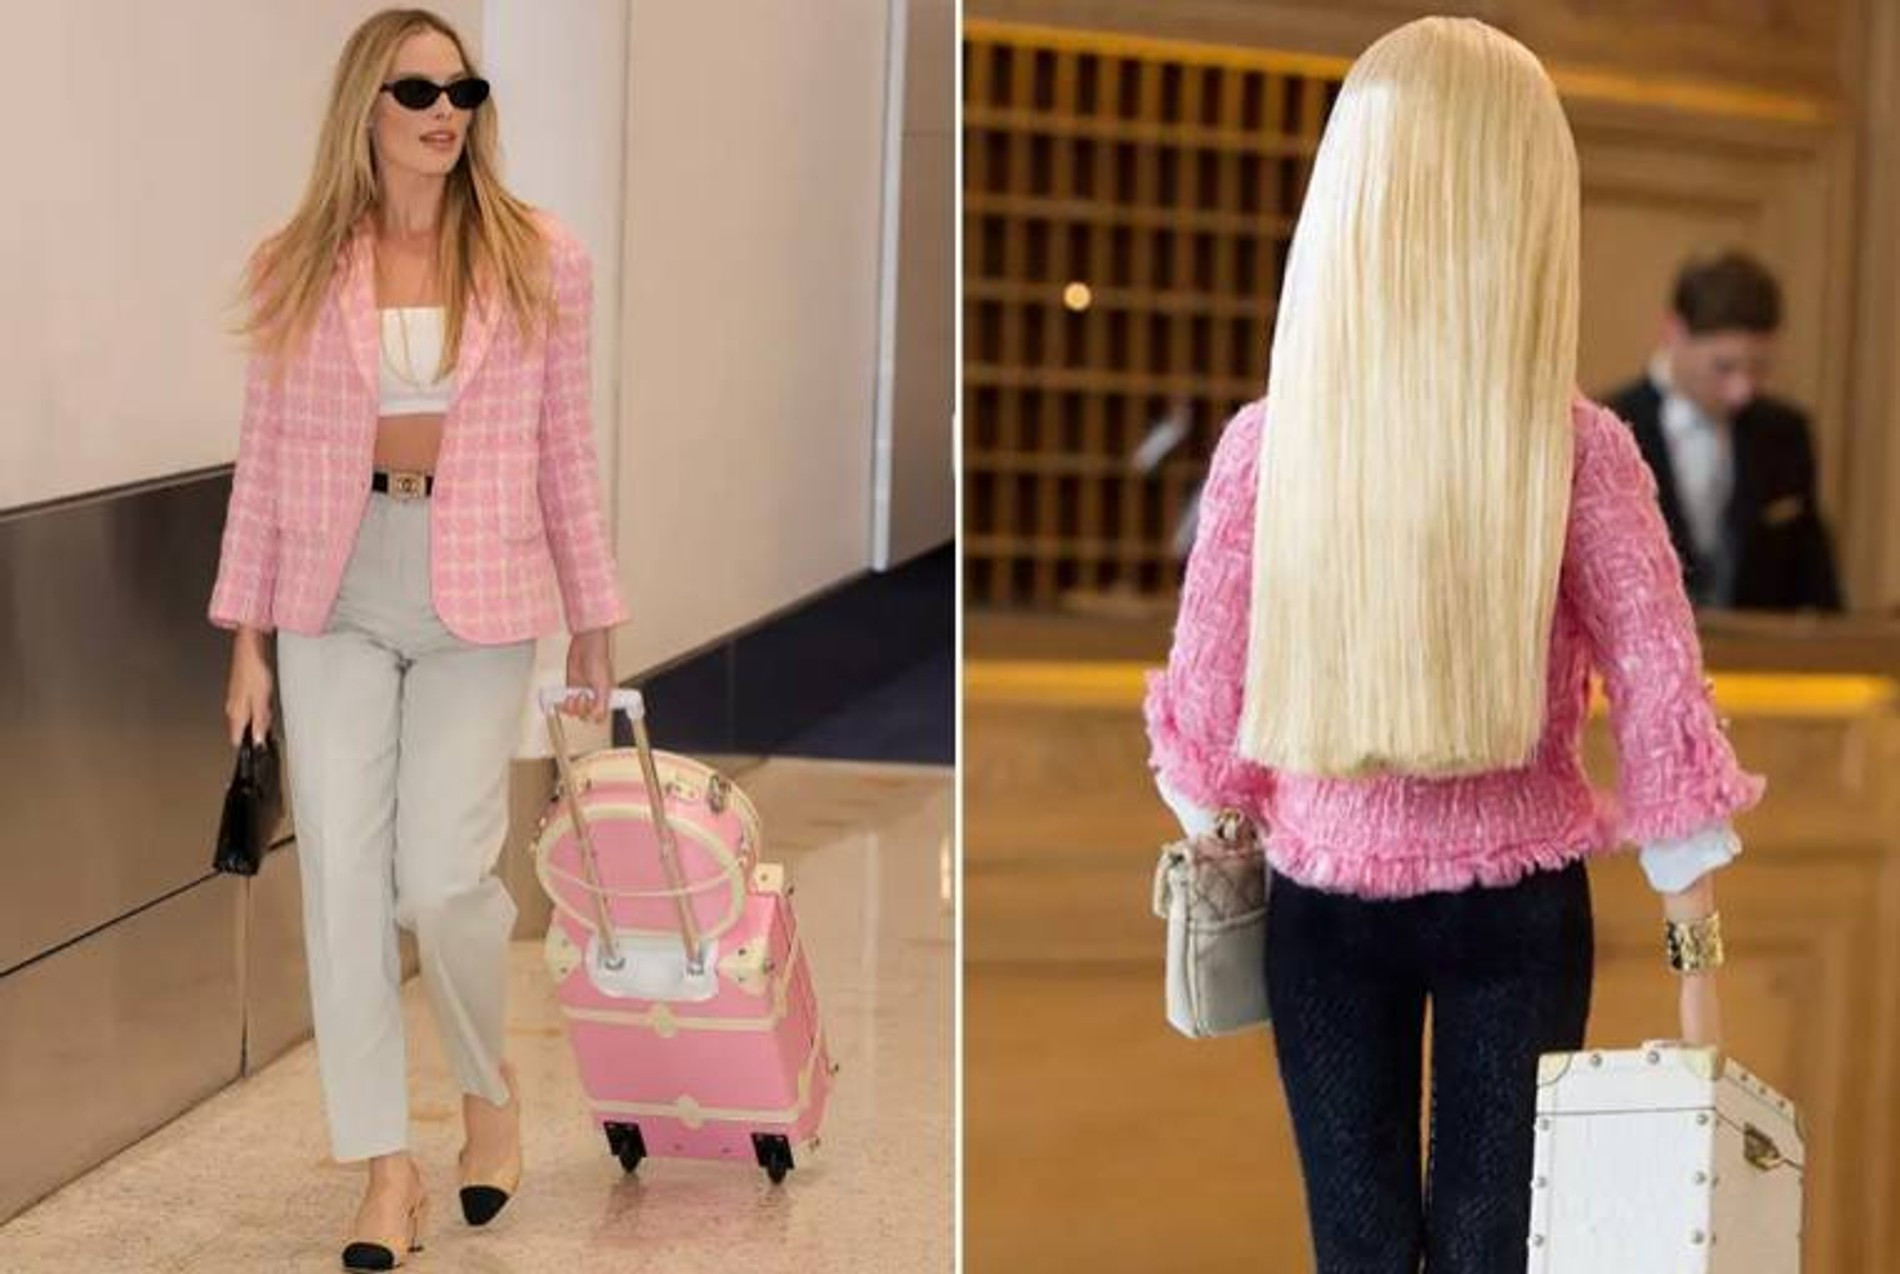 27 июня в аэропорту Сиднея актриса появилась в розовом жакете и серых брюках Chanel, а дополнили образ «кукольный» розовый чемодан и шляпная коробка от Steamline Luggage, вдохновленные стилем Барби
Фото: Page Six